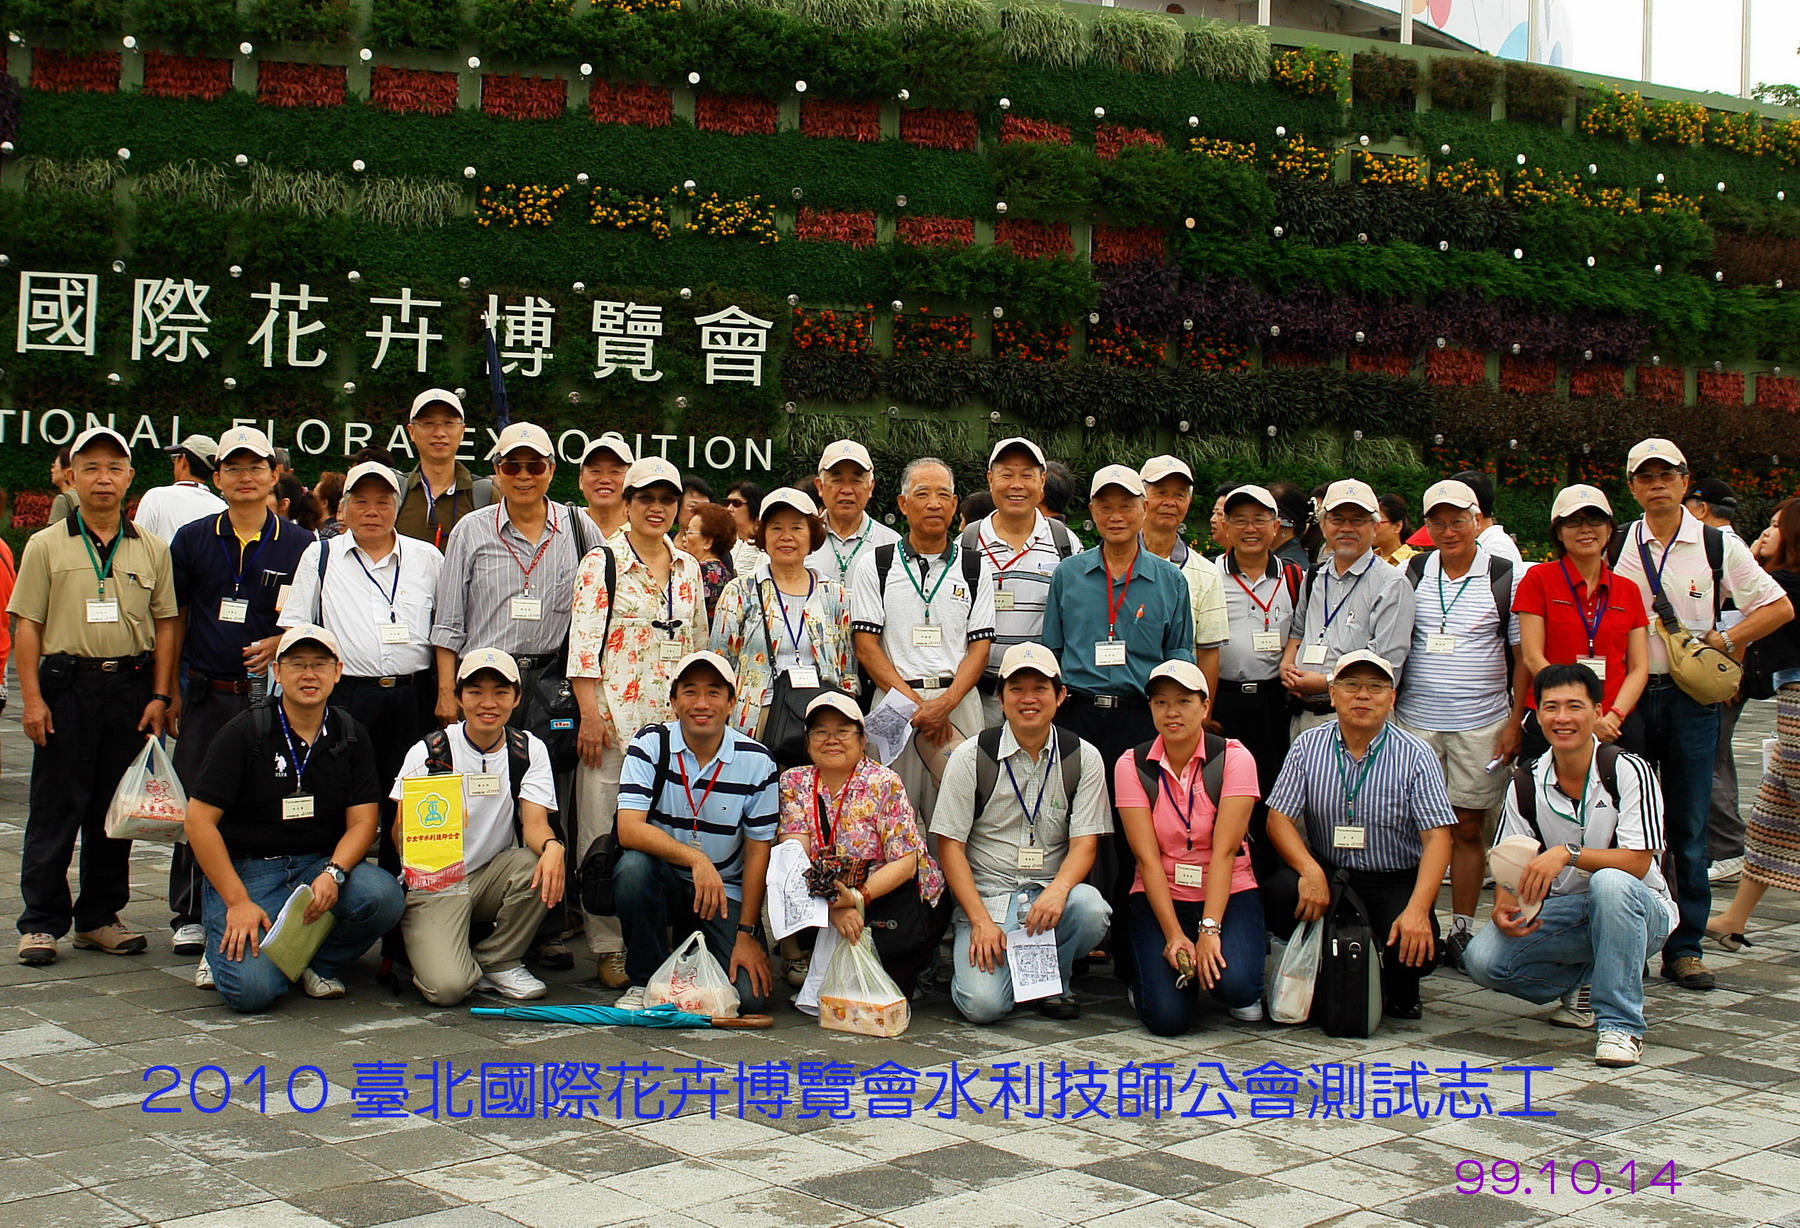 2010臺北國際花卉博覽會測試志工活動參與水利技師及眷屬入園前合照